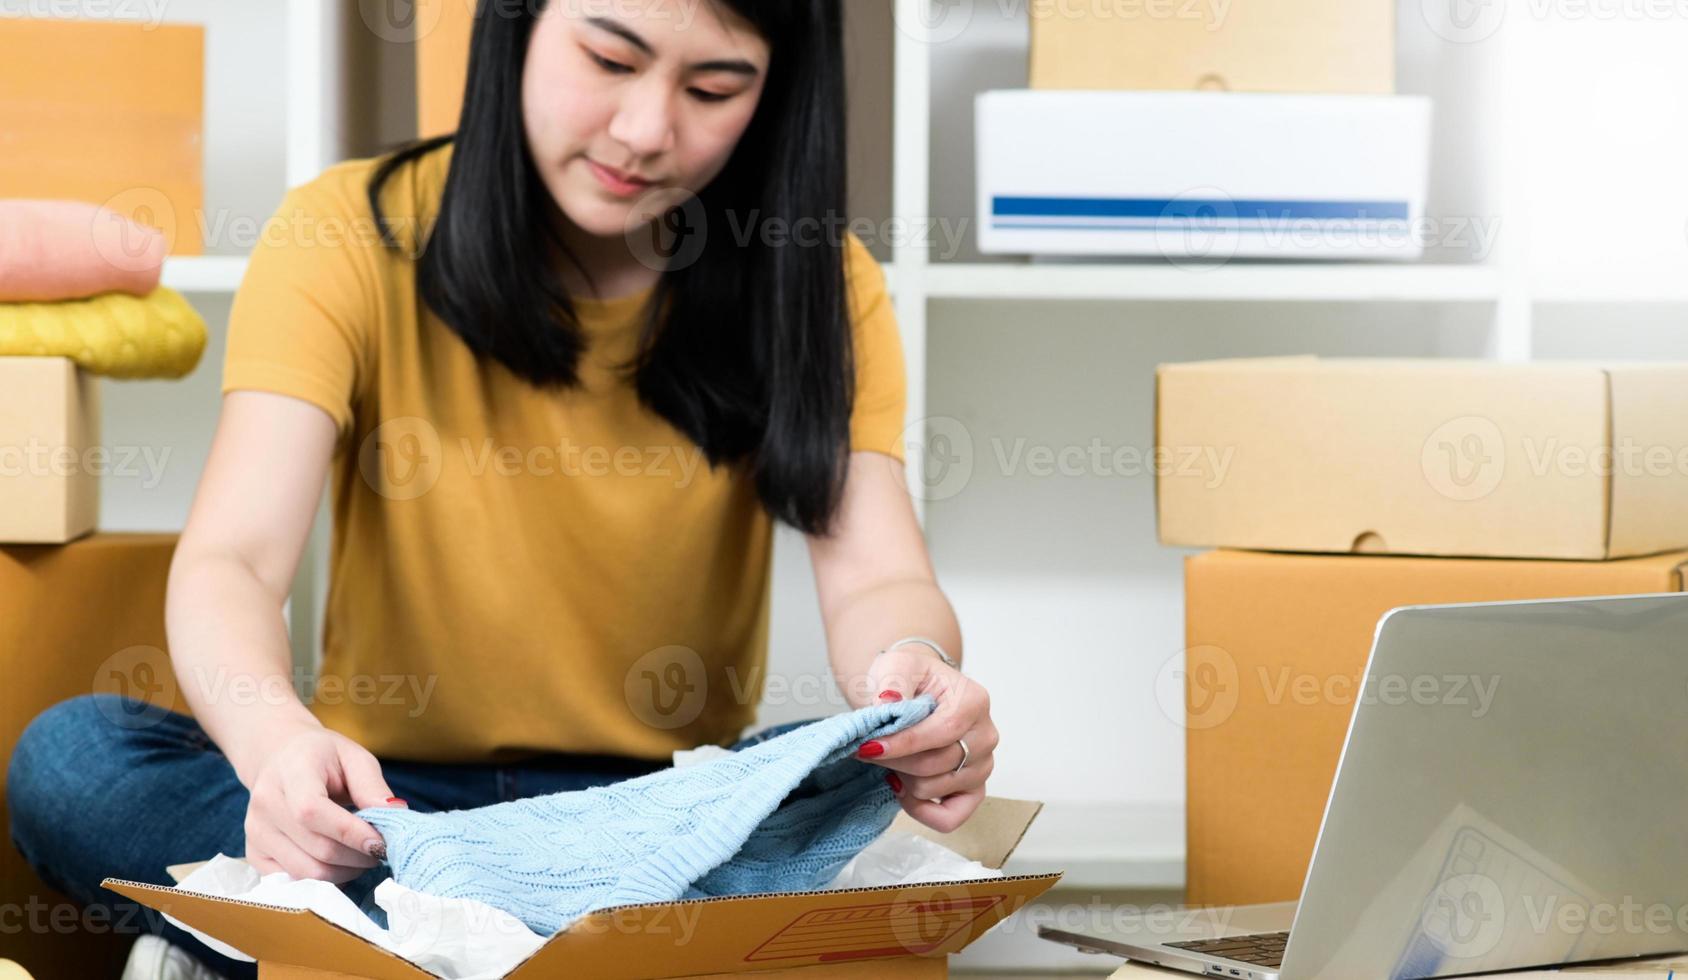 mulher embala uma camisa em uma caixa de pacote para entrega a um cliente, vende produtos online, transporta pacotes. foto